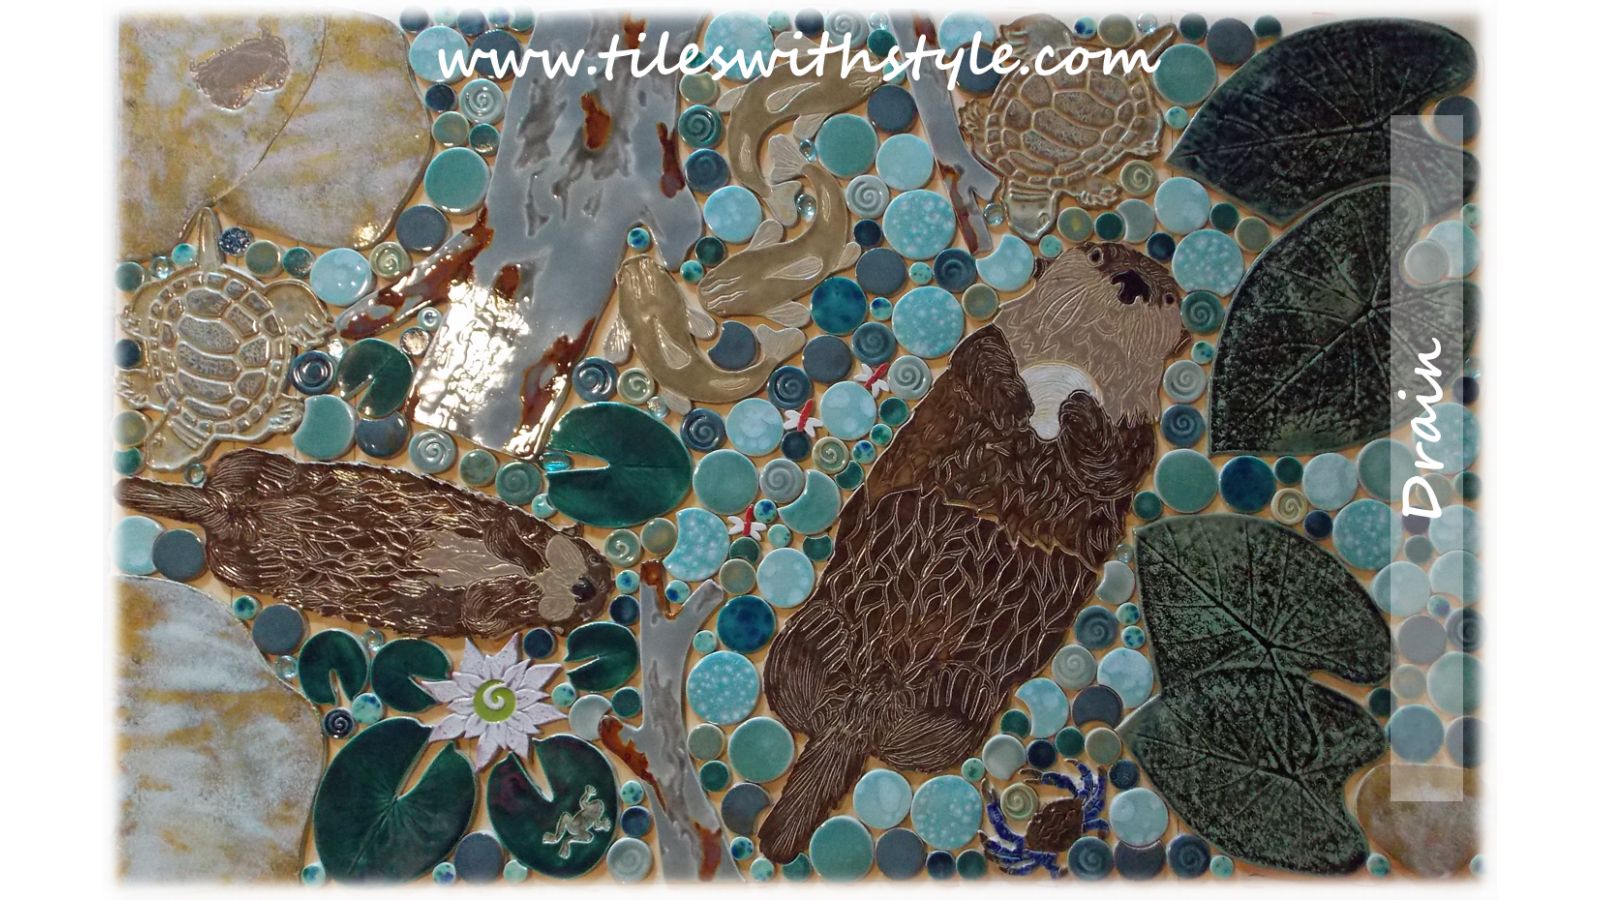 Otter mosaic tile shower floor